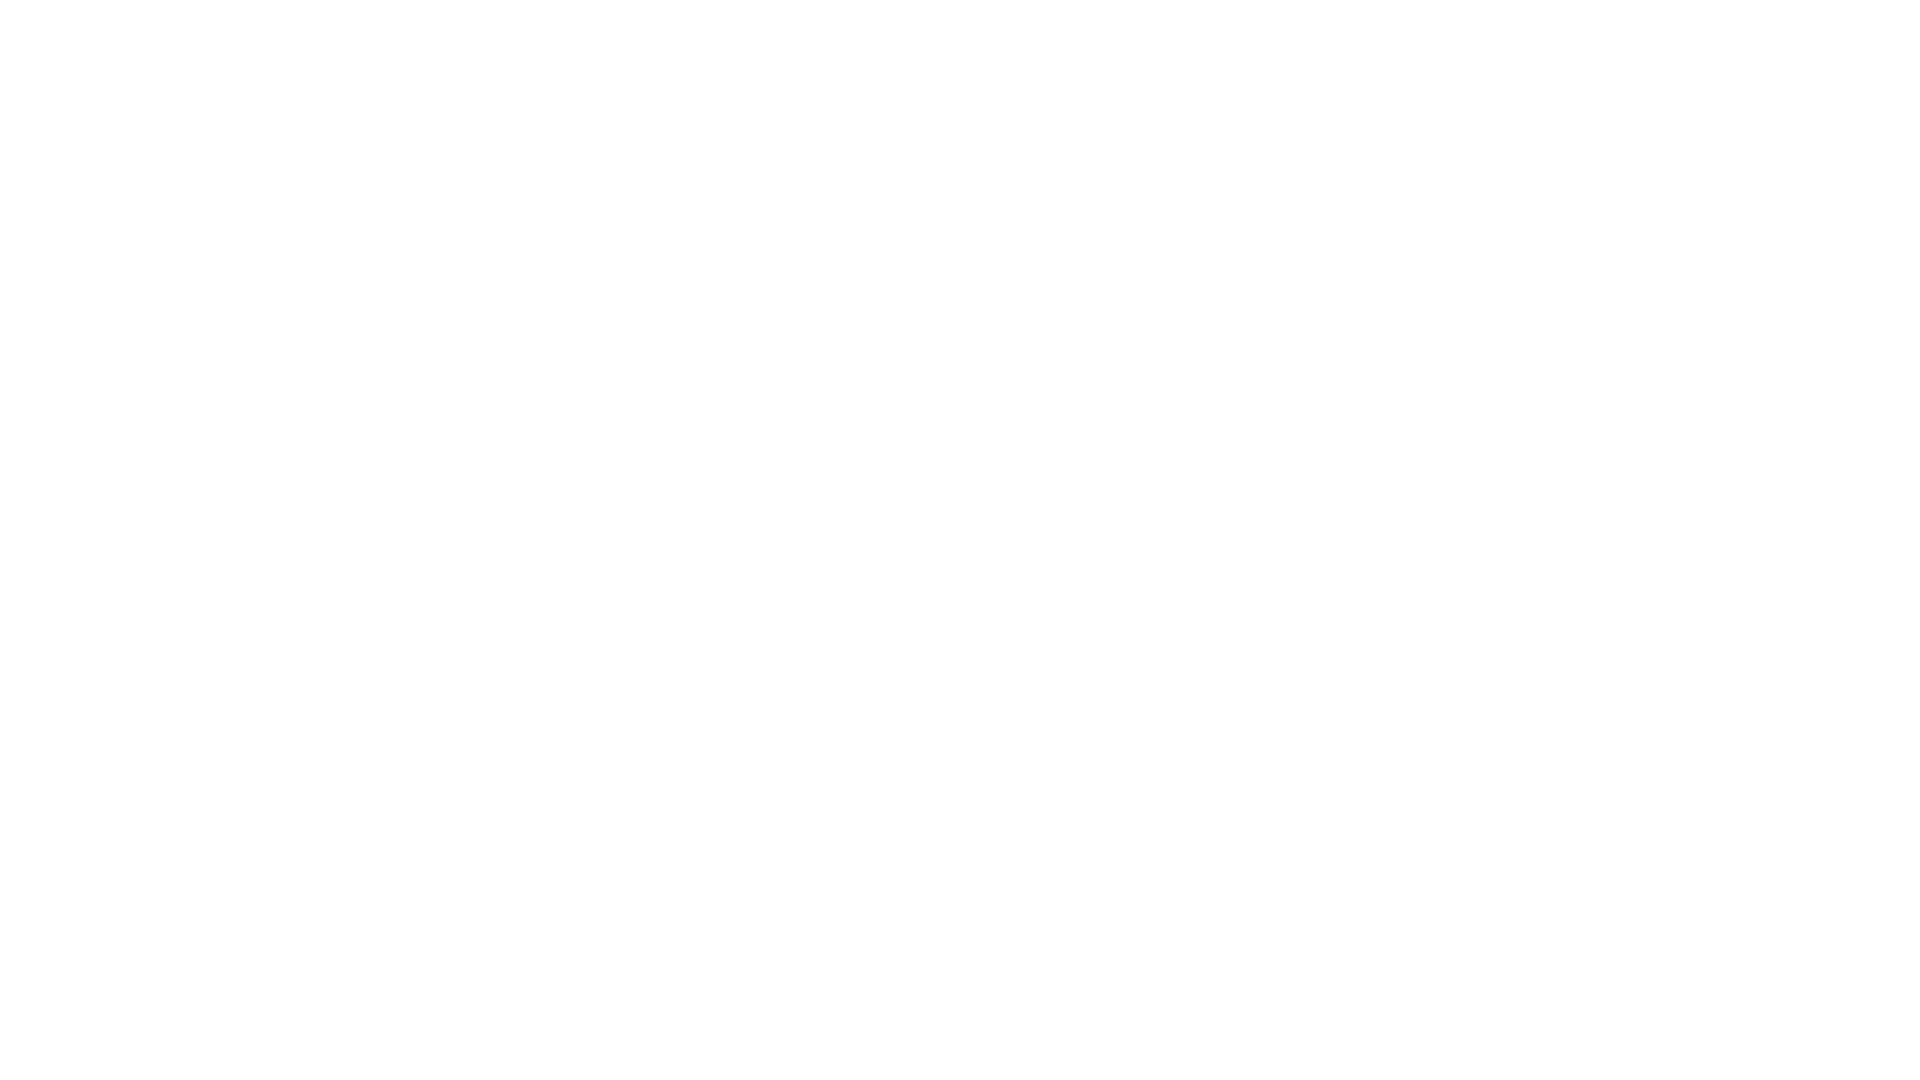 King Whisker